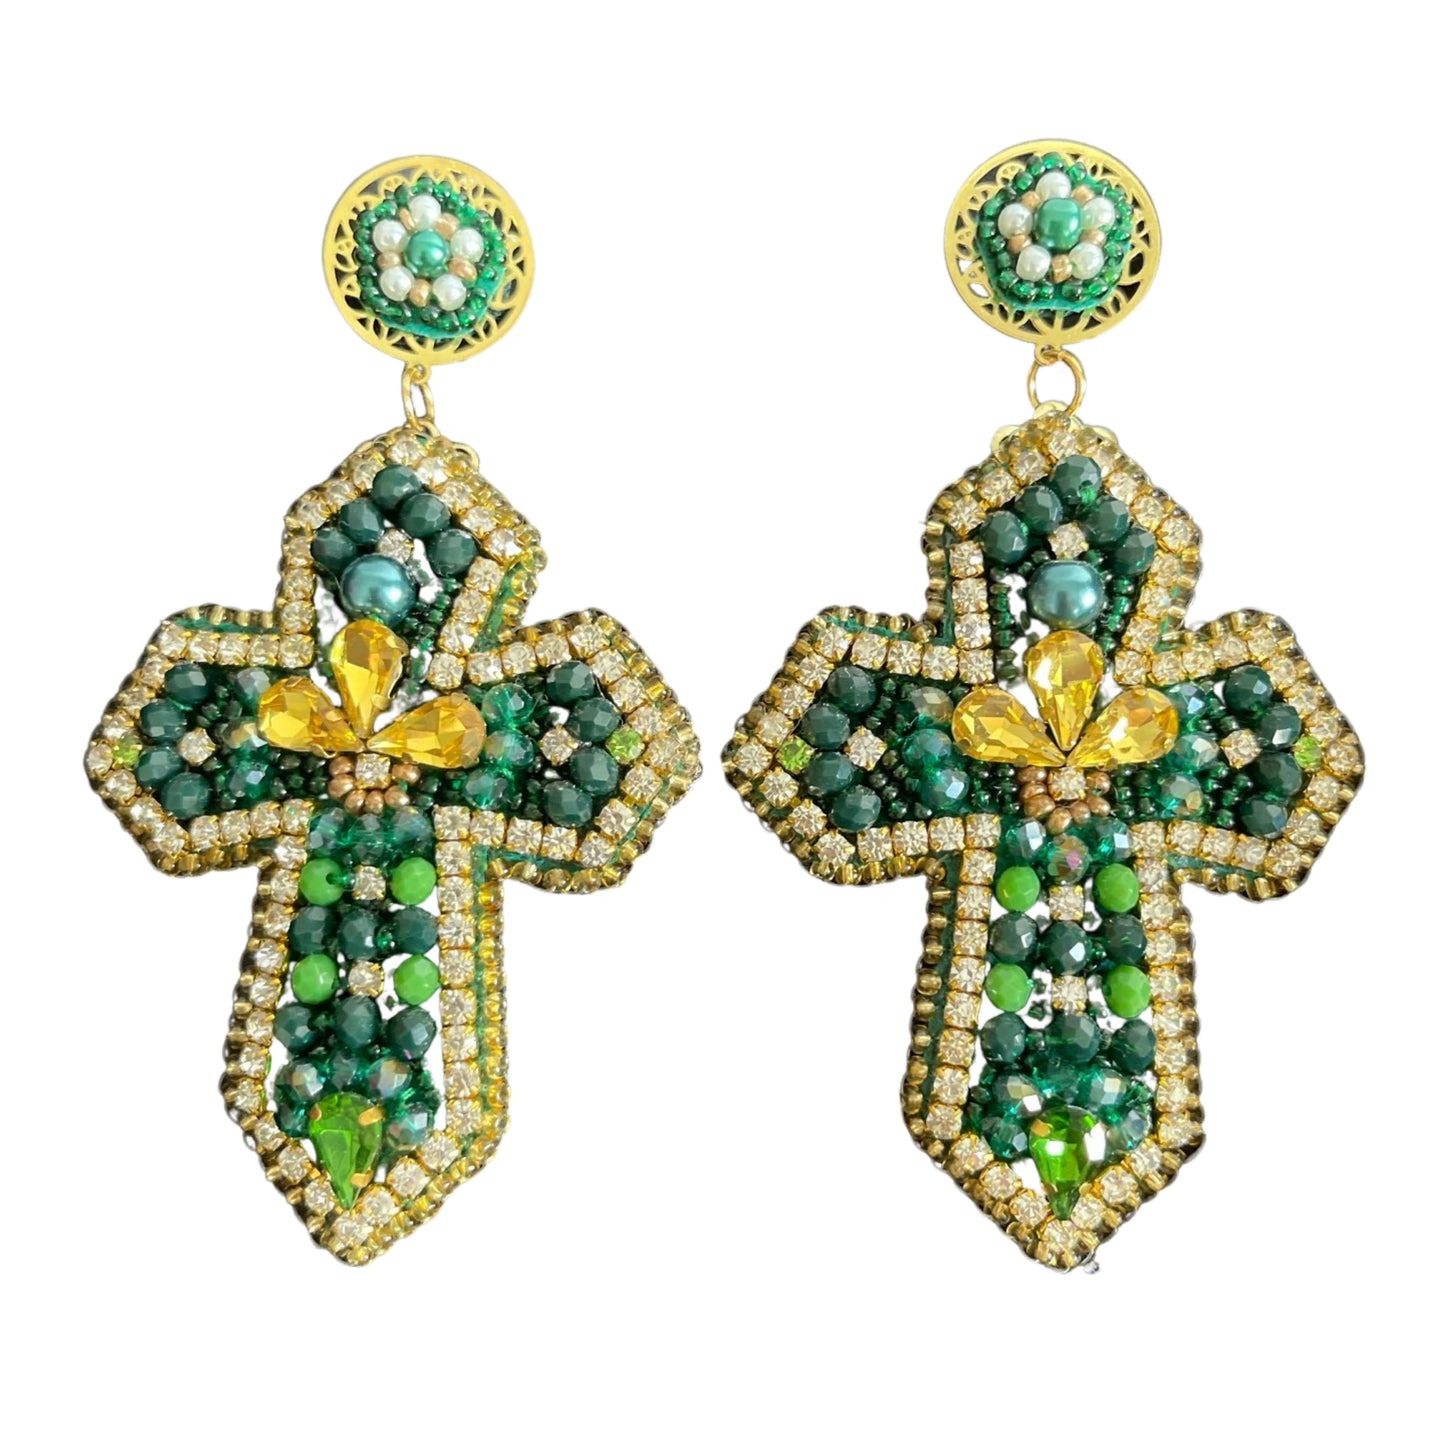 05. Green cross earrings